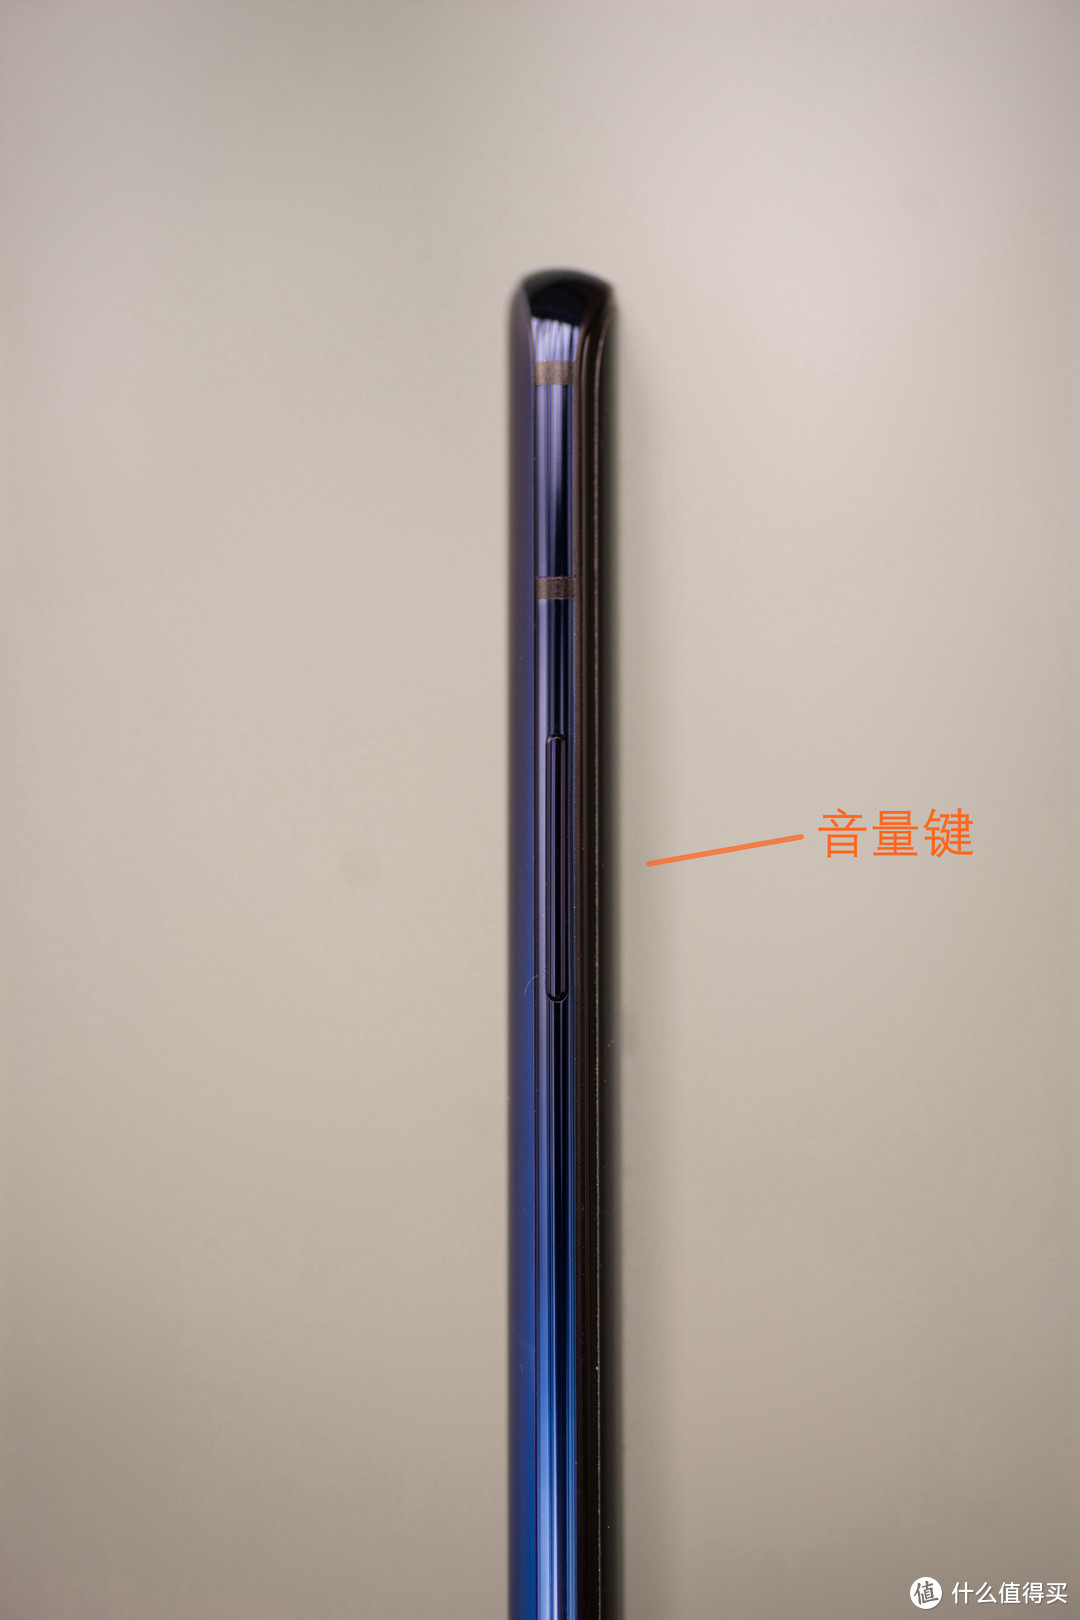 关于一加OnePlus 7pro我所知道的都在这里--- 使用评测报告及东京街头实拍